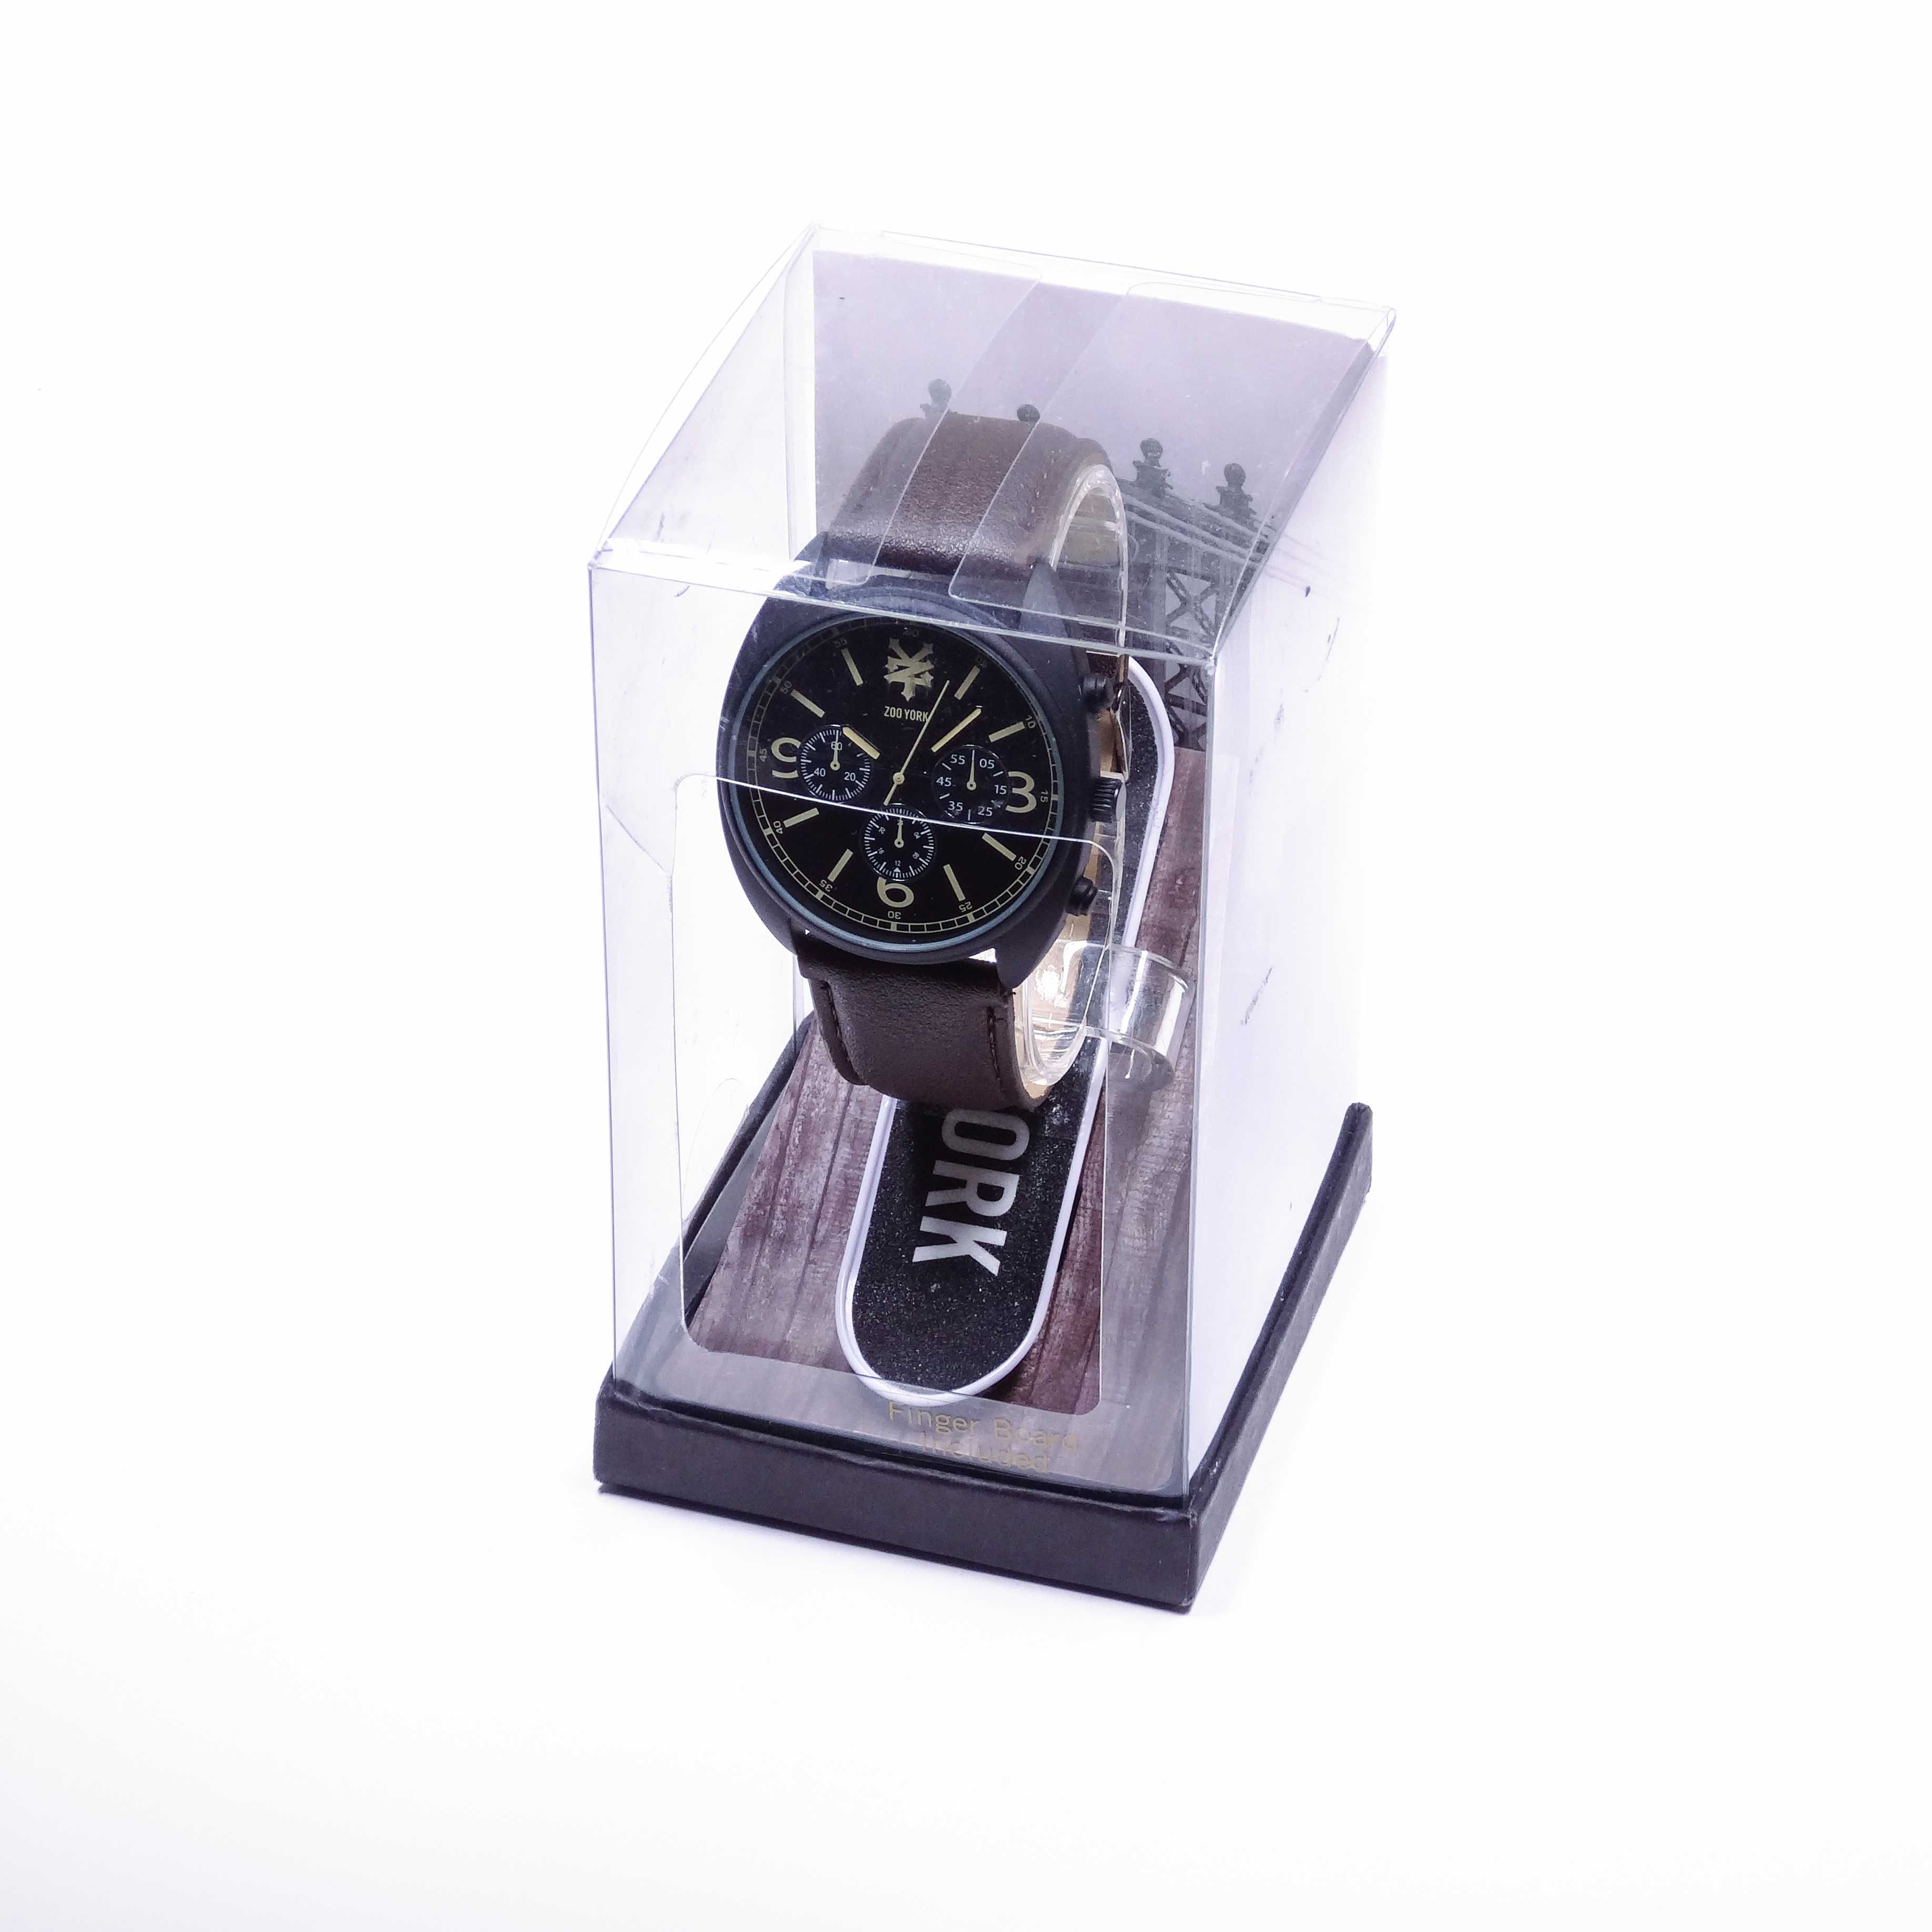 Новые наручные часы Zoo York || Скейт / Скейтборд часы / Оригинальные